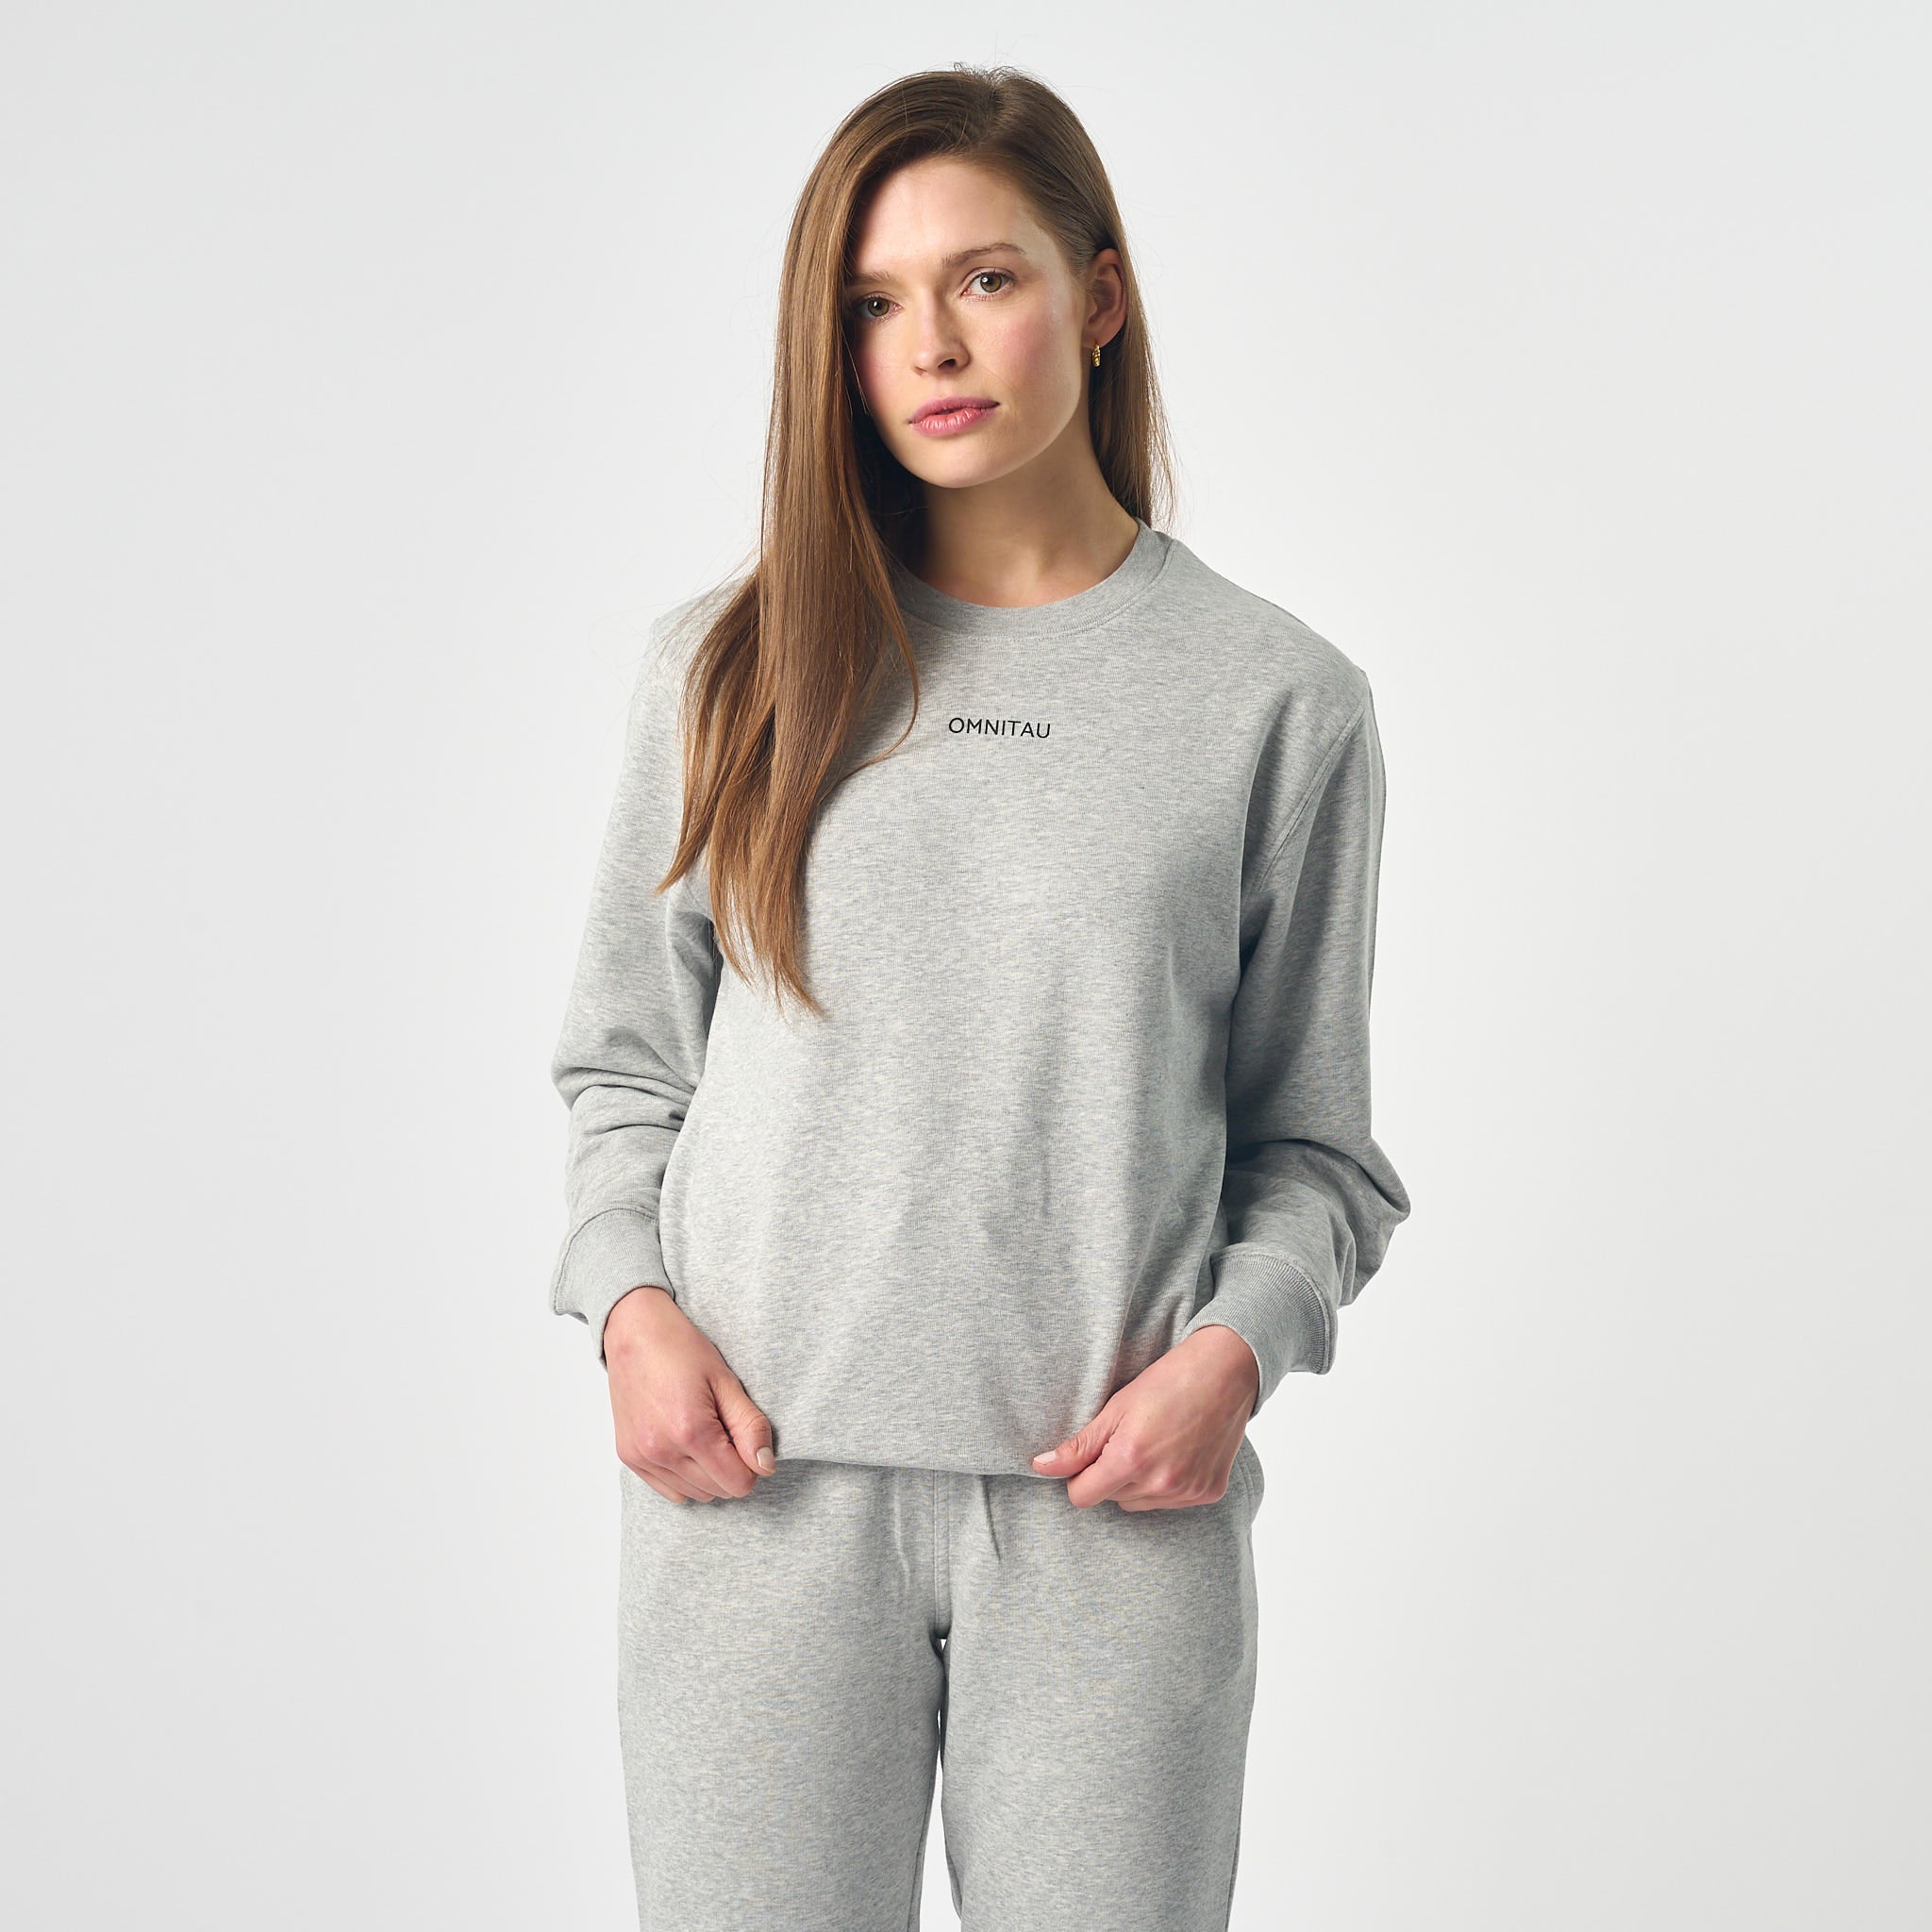 Omnitau Women's Ellyse Organic Cotton Medium Fit Sweatshirt - Heather Grey